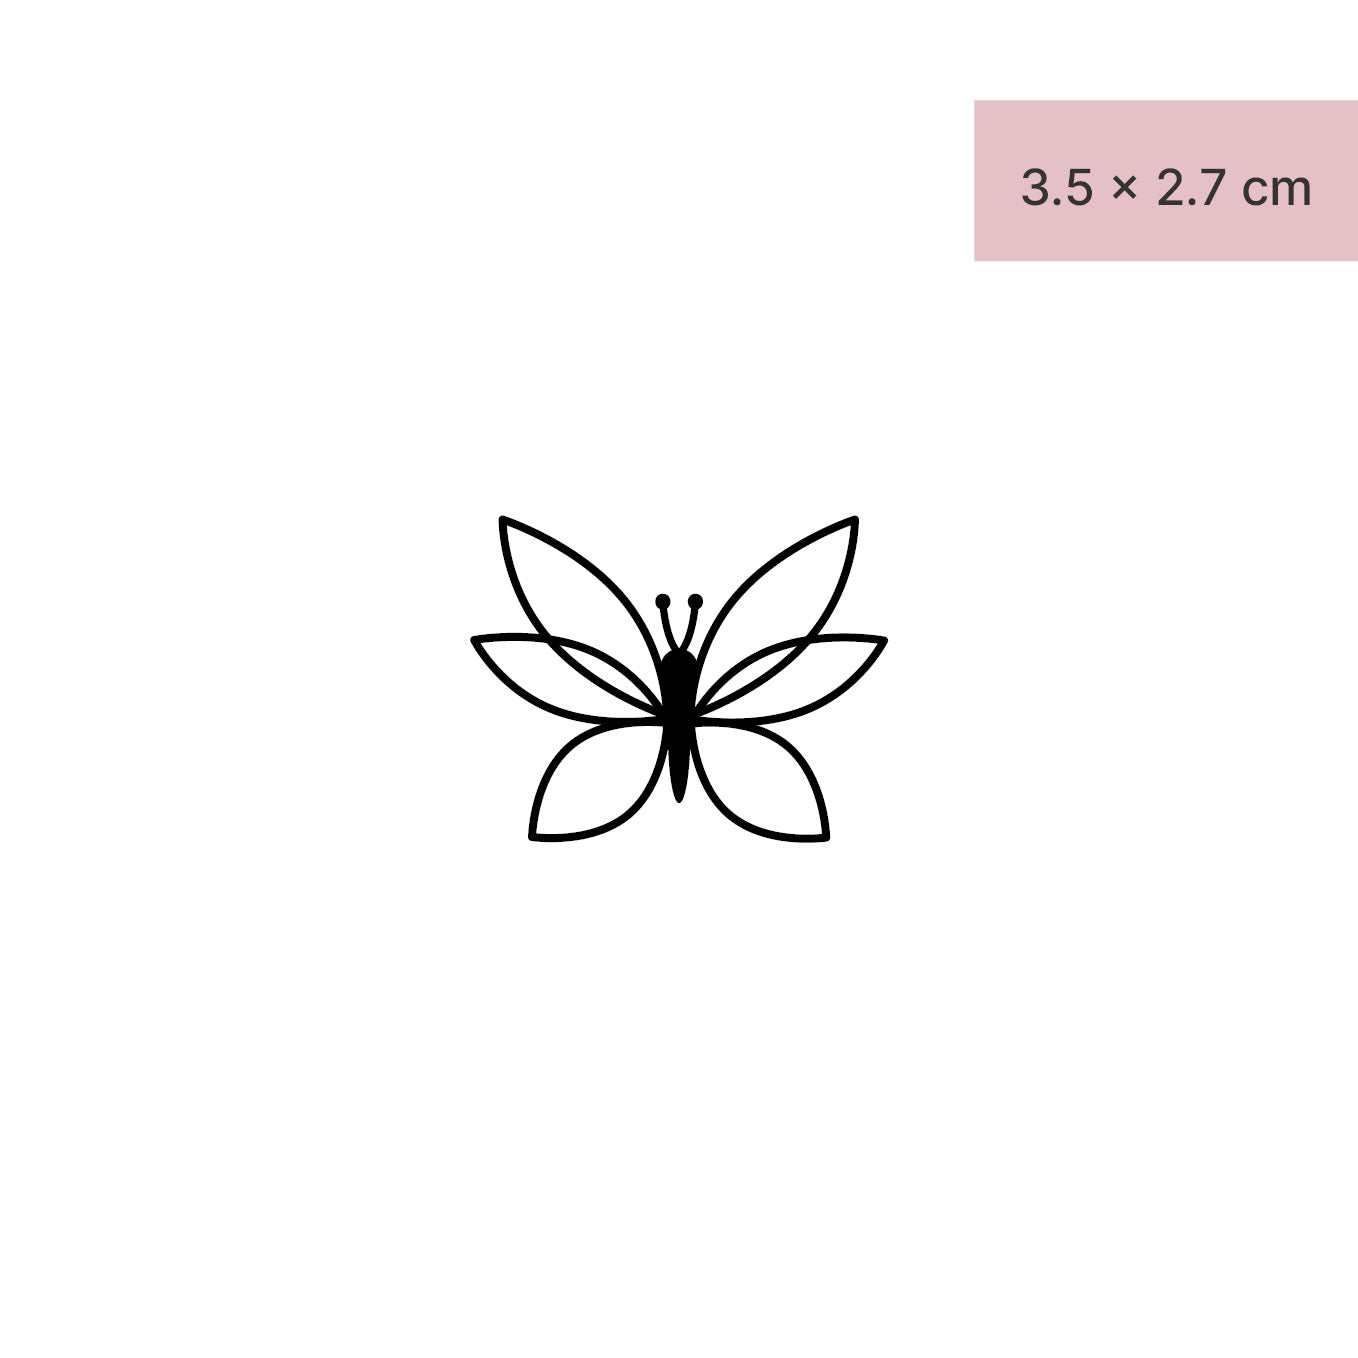 Symmetrischer Schmetterling Tattoo von minink, der Marke für temporäre Tattoos.